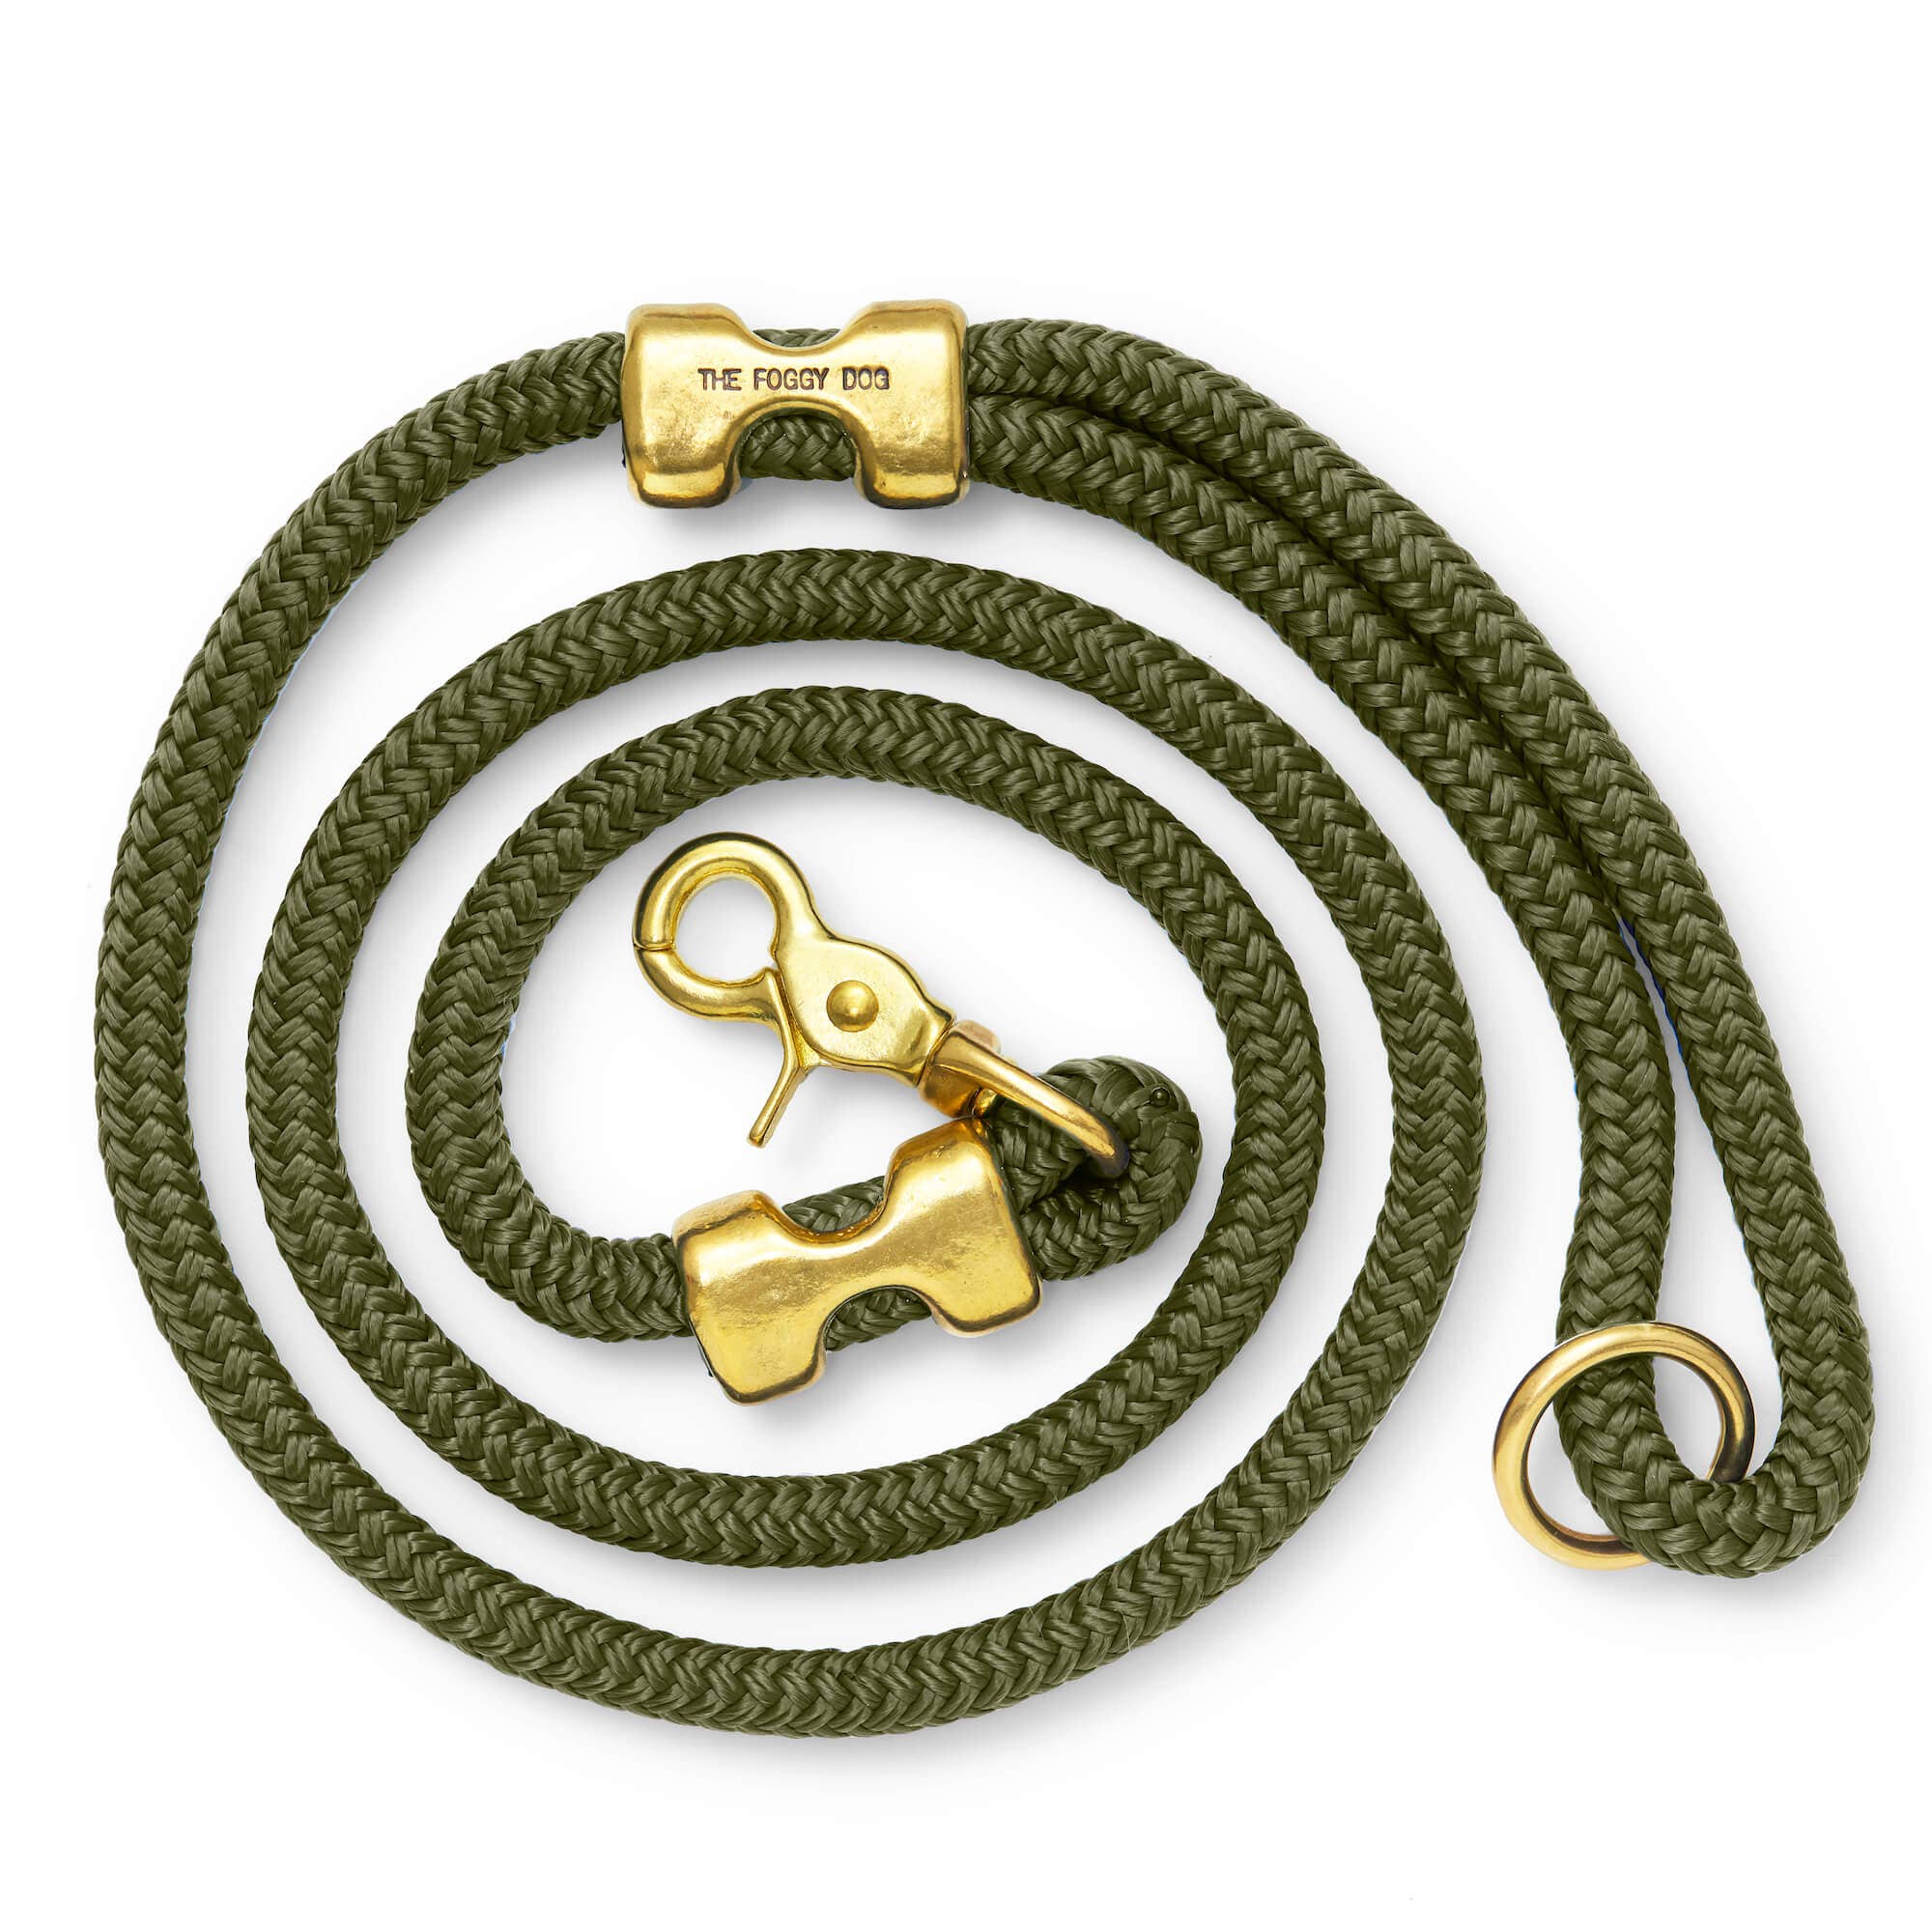 The Foggy Dog - Olive Marine Rope Dog Leash